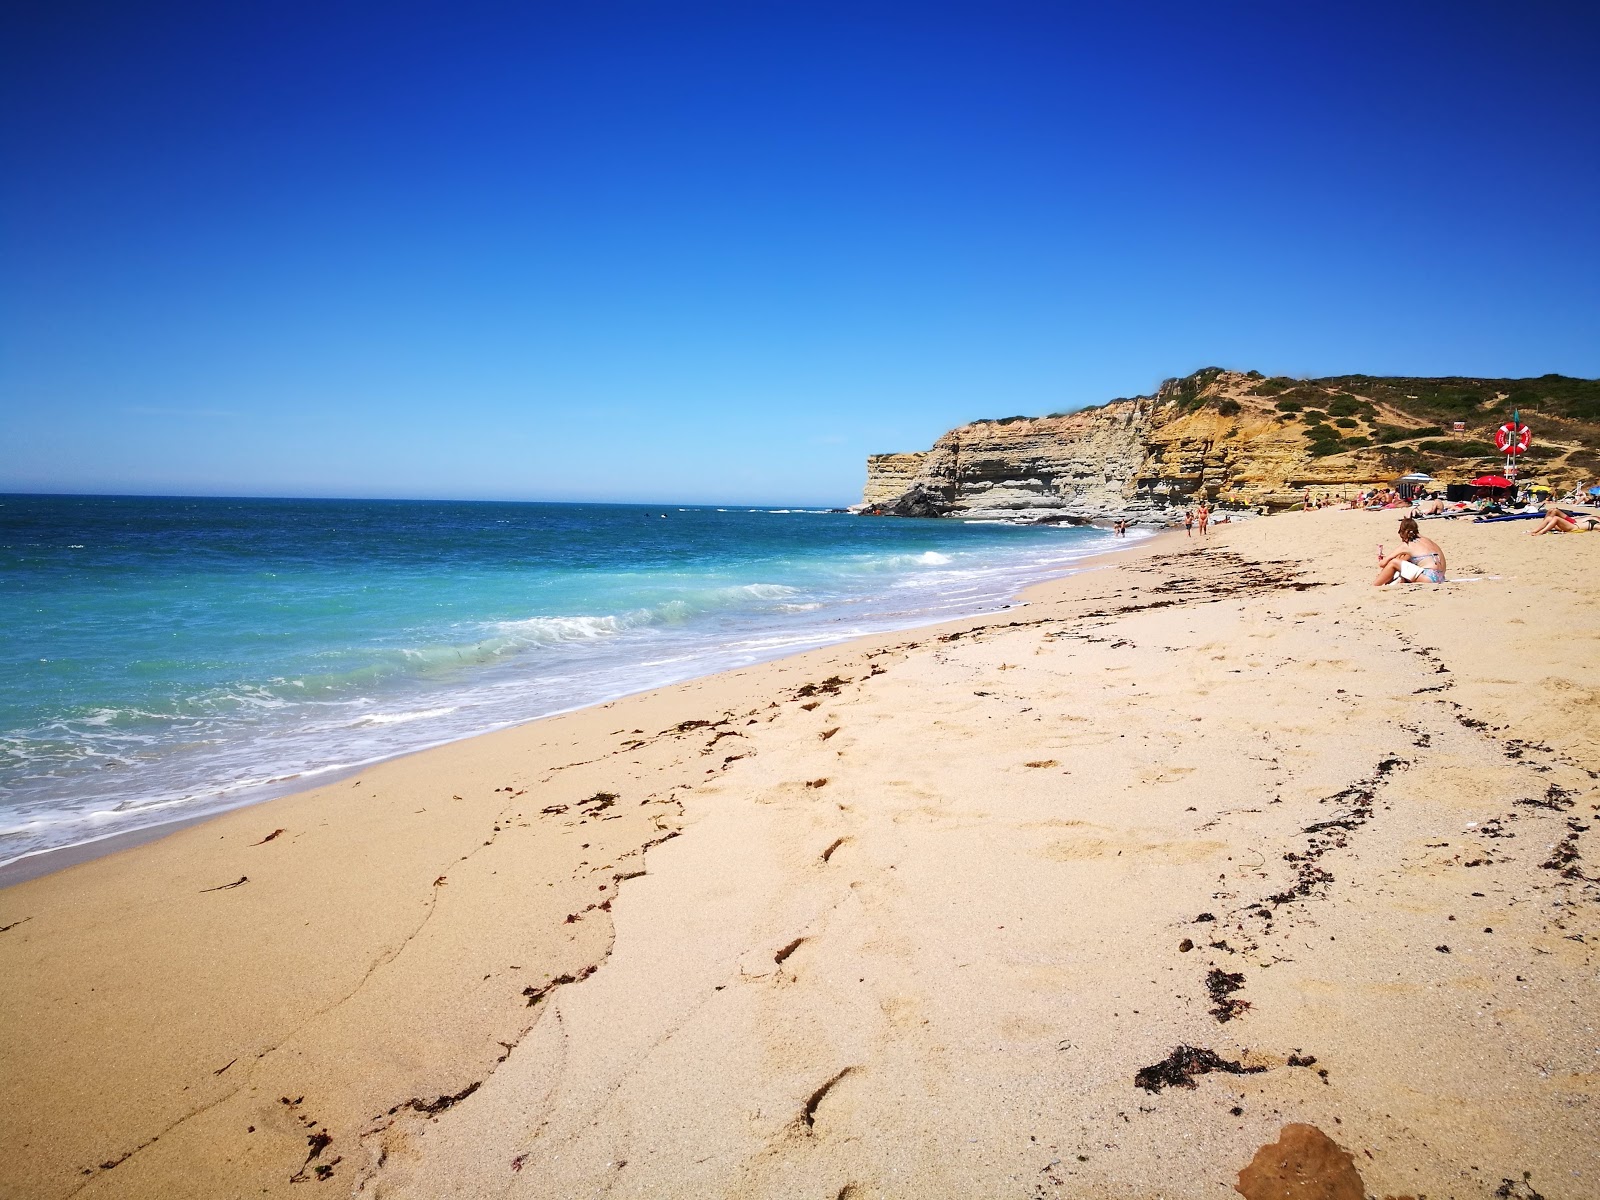 Fotografie cu Praia do Alibaba - locul popular printre cunoscătorii de relaxare